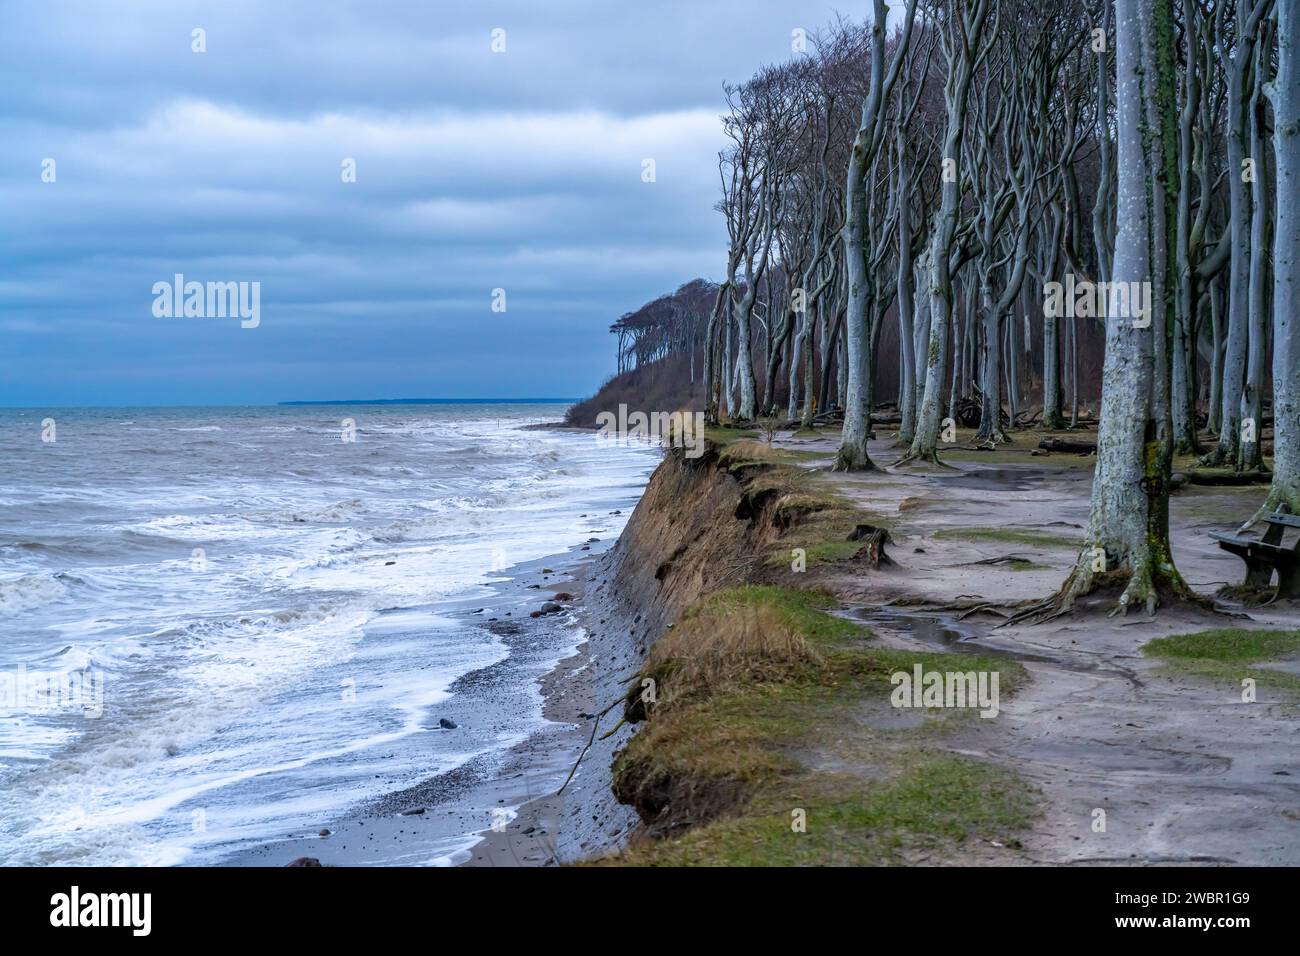 Strand, Steilküste und Gespensterwald im Ostseebad Nienhagen, Mecklenburg-Vorpommern, Deutschland |  Steep sea cliffs with Ghost Wood - Gespensterwald Stock Photo